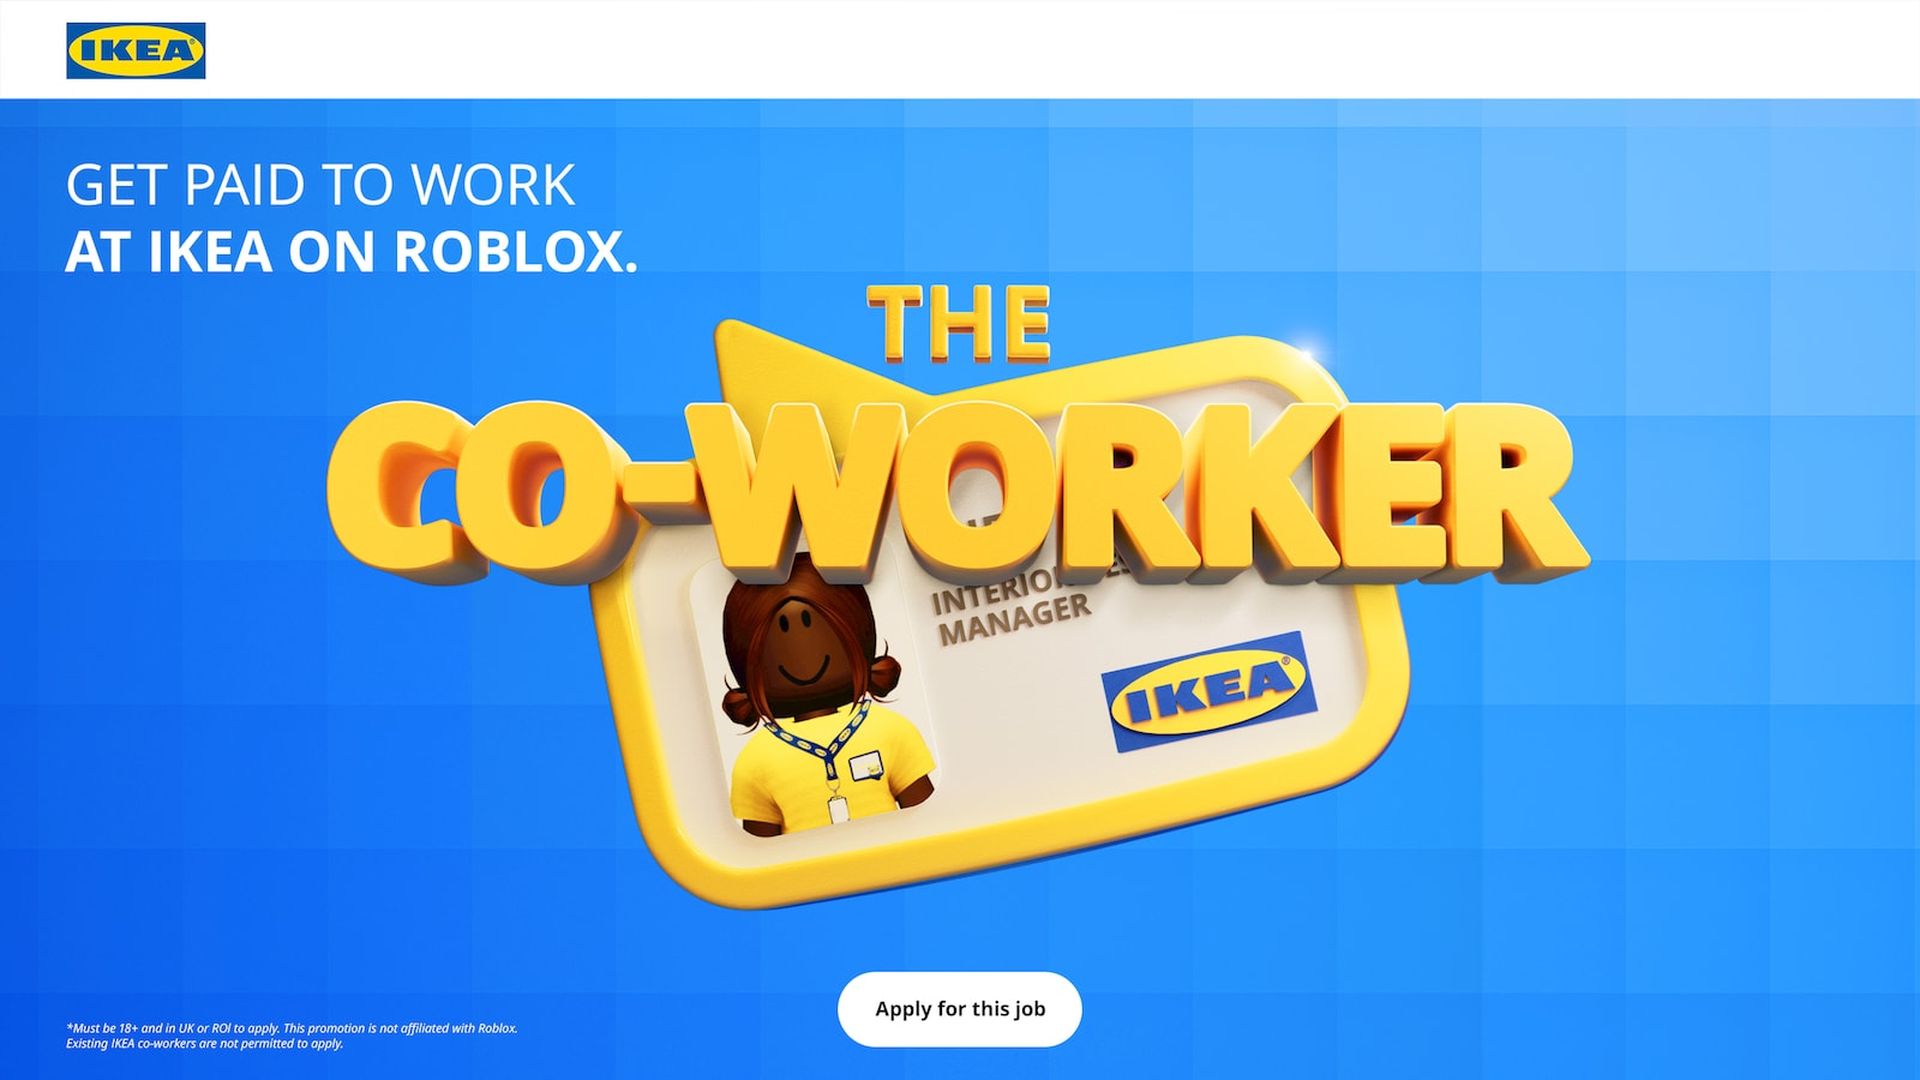 Como fazer o formulário de emprego Roblox IKEA?